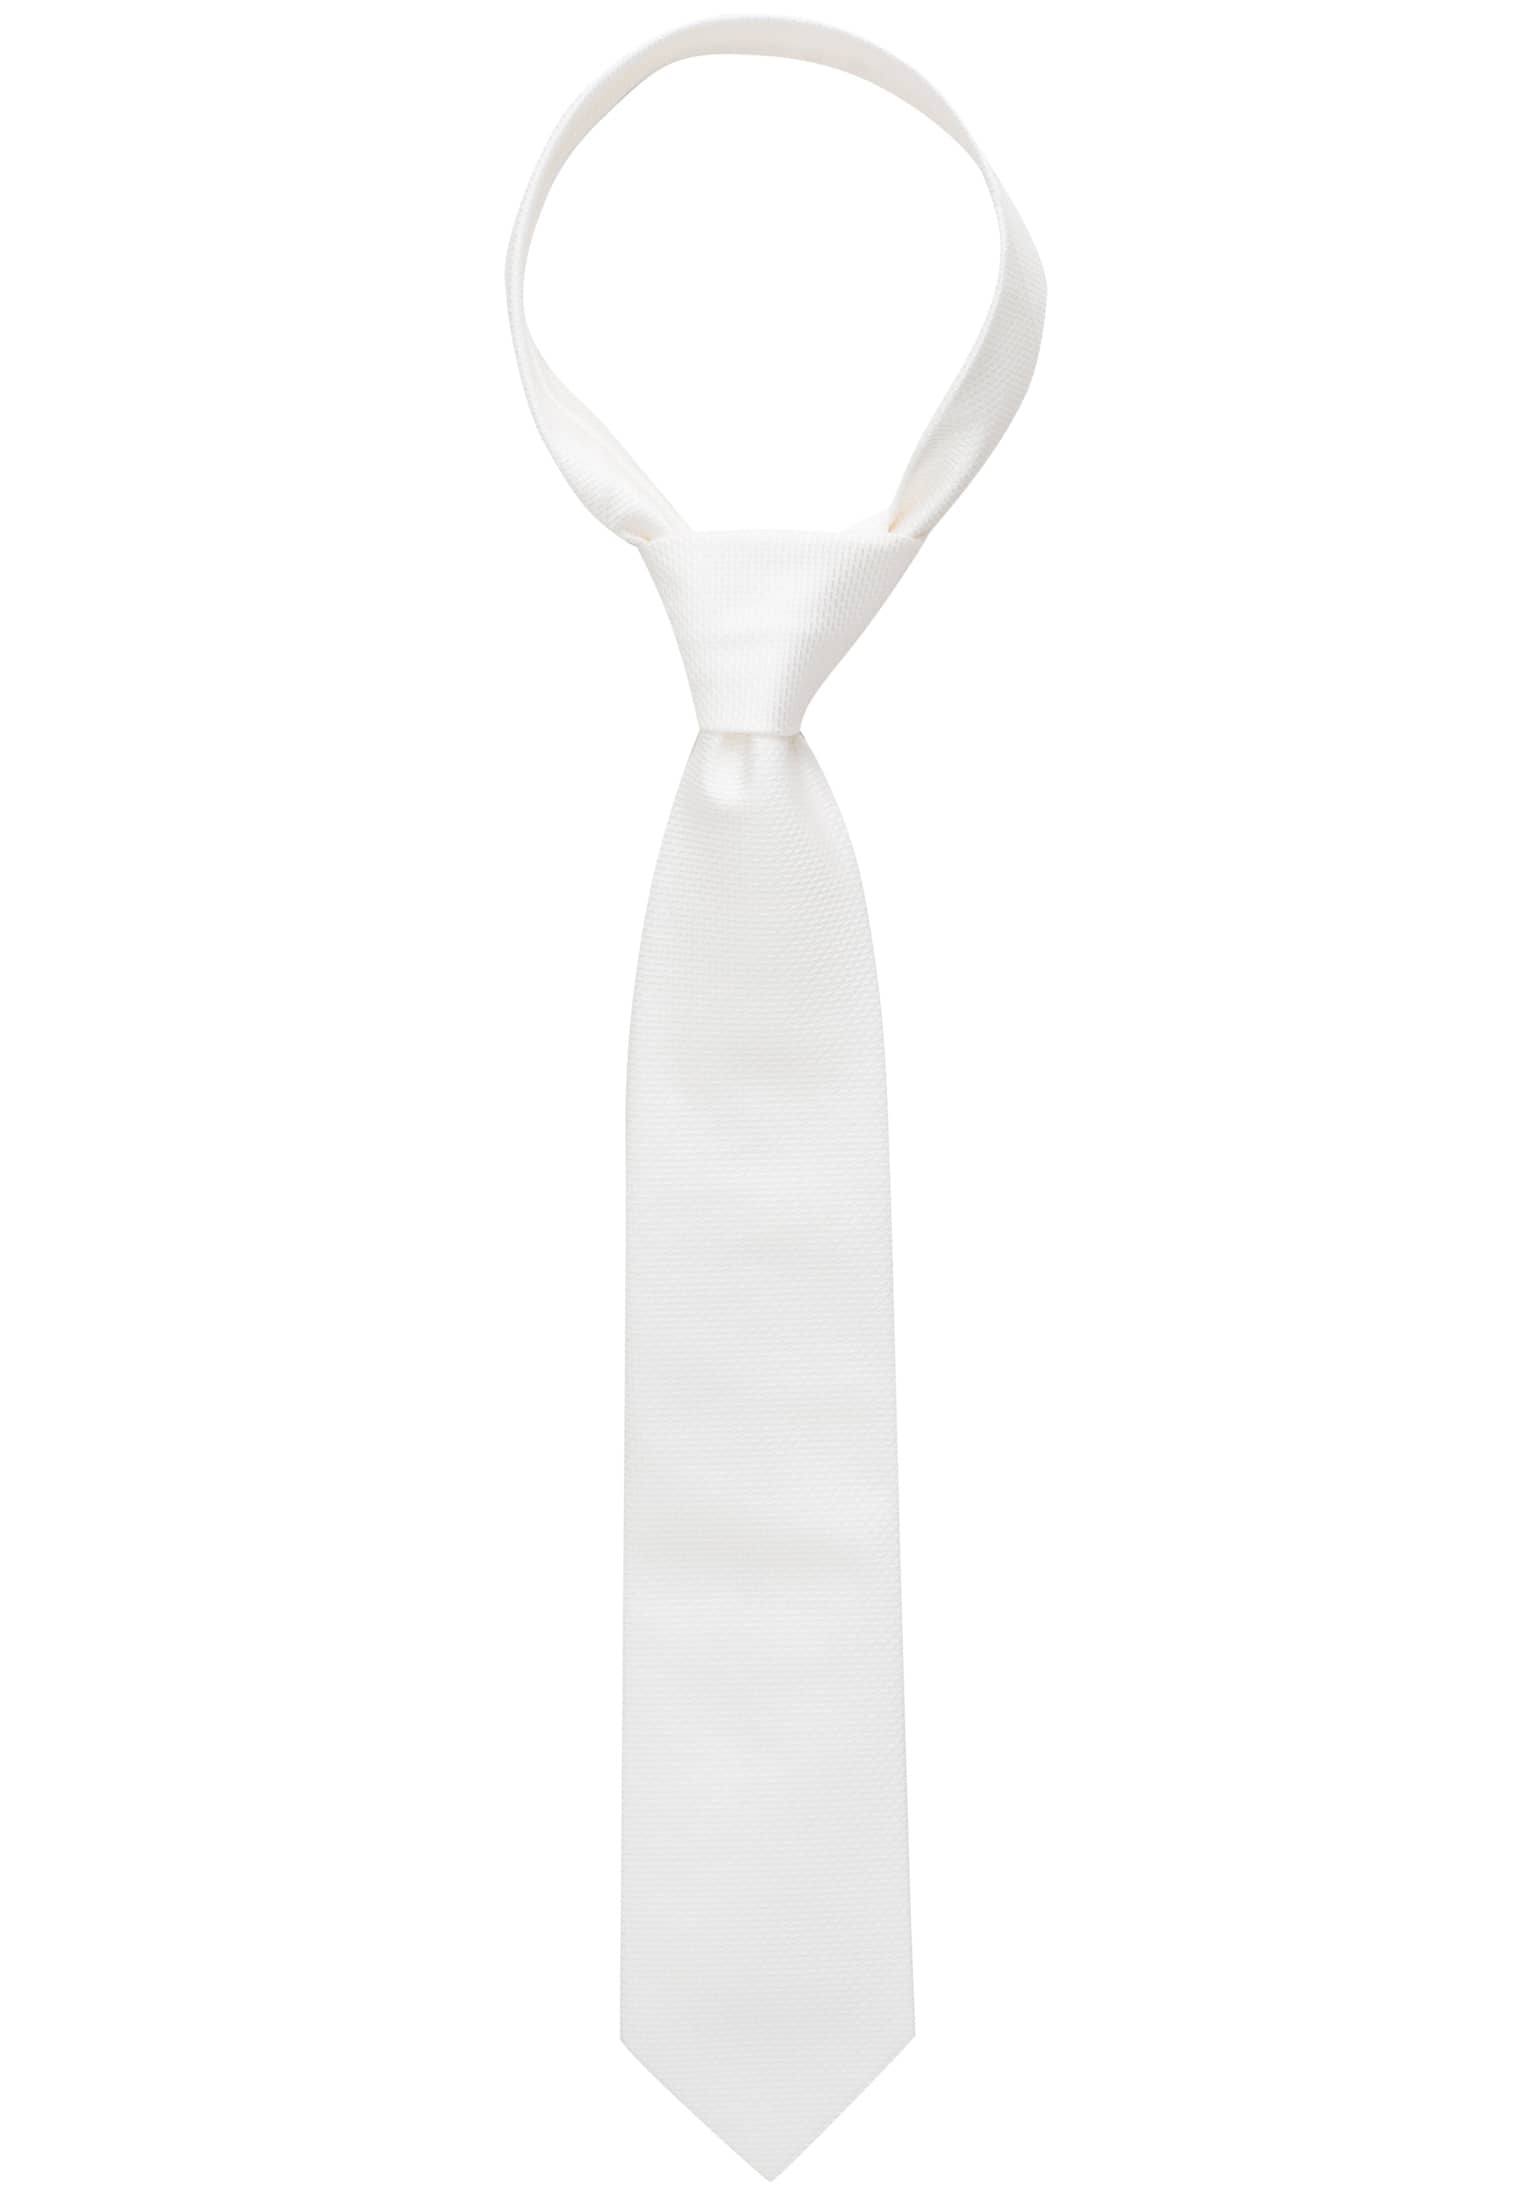 Krawatte in weiß strukturiert | weiß | 160 | 1AC01866-00-01-160